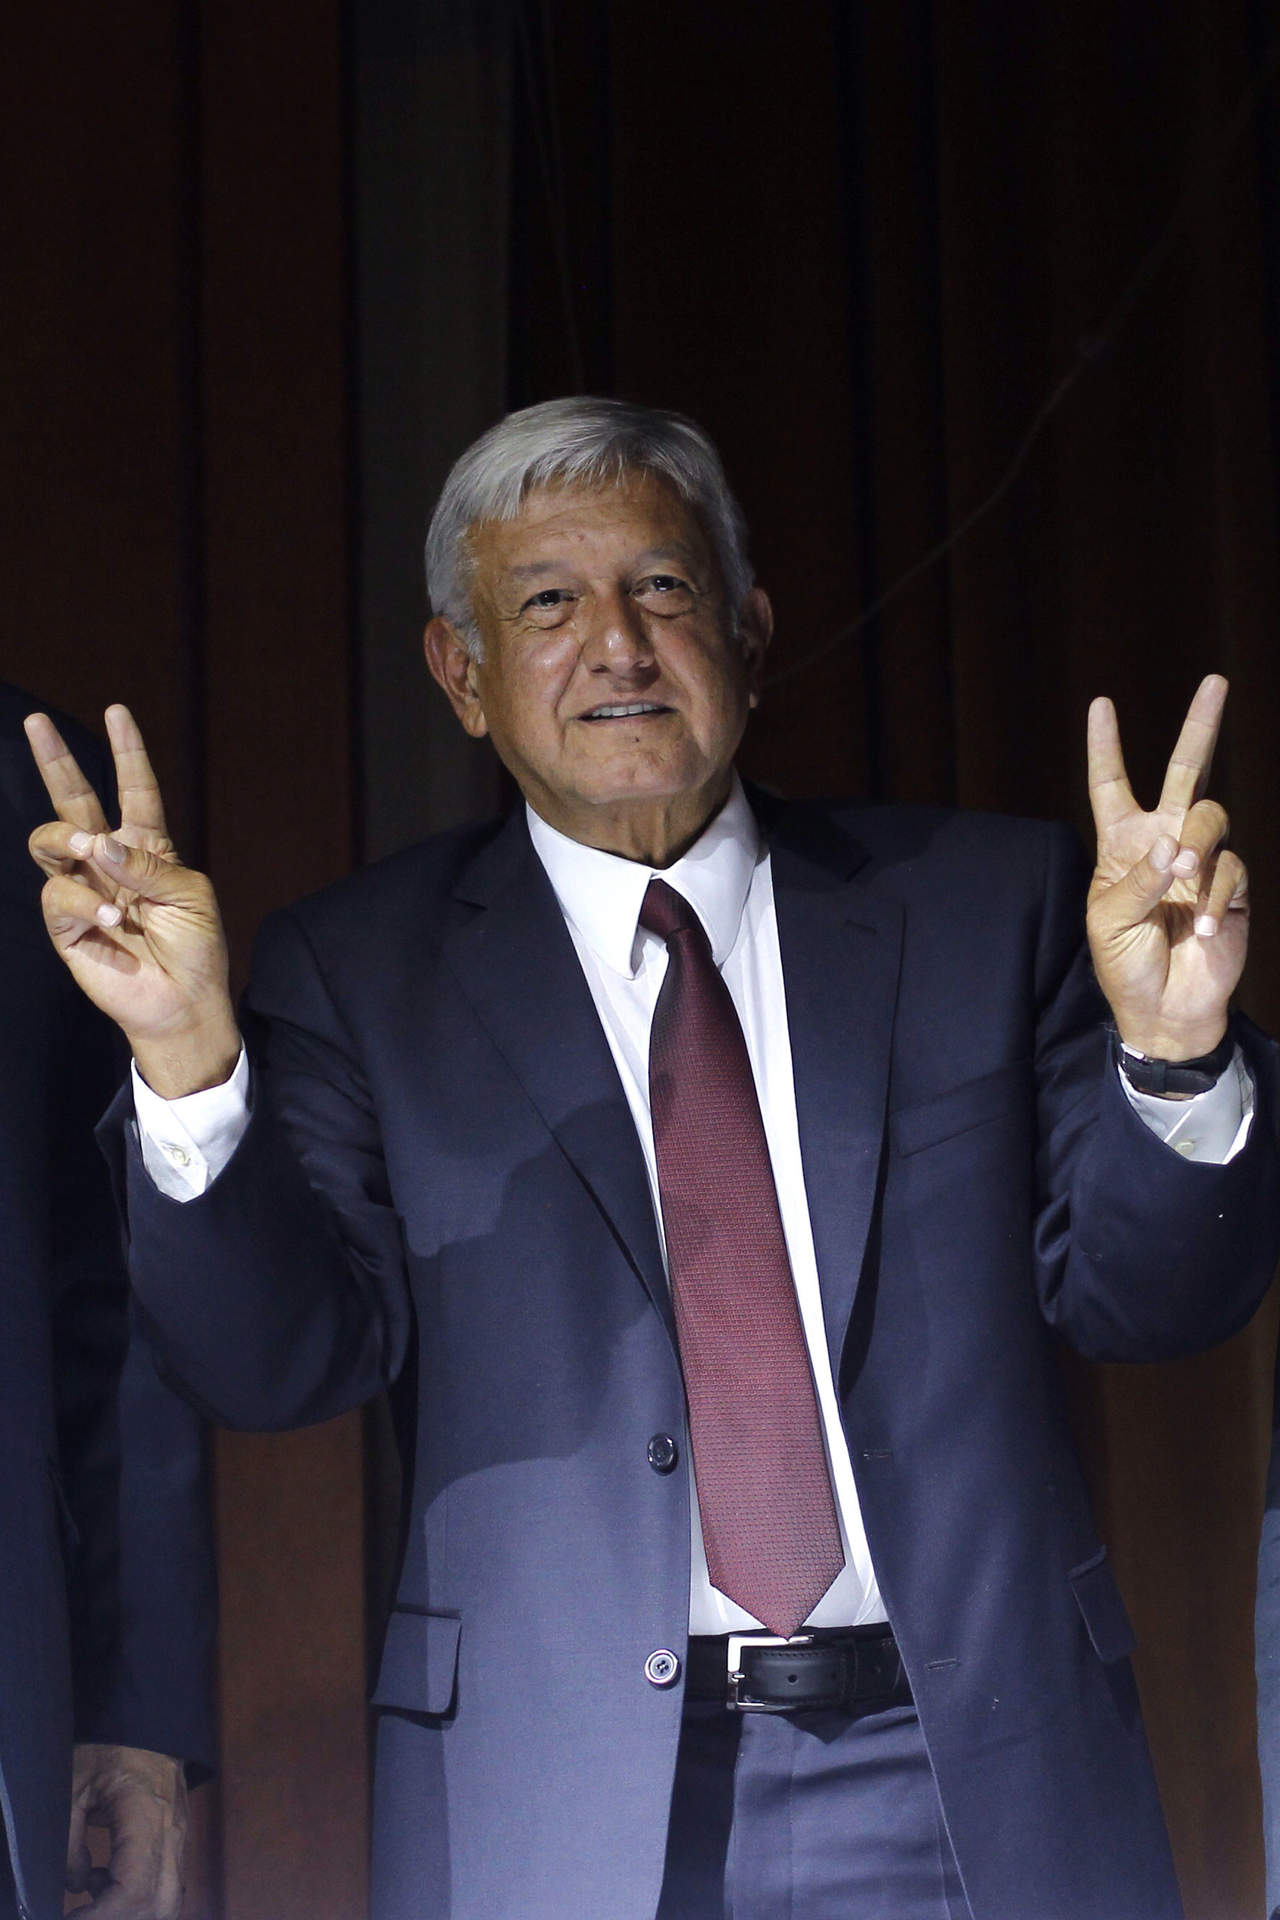 El lunes 2 de julio a las 21 horas cerró el Programa de Resultados Electorales Preliminares (PREP) del INE con 52.96 % de los votos a favor de López Obrador, que representaban 24 millones 127 mil votos. (EFE)